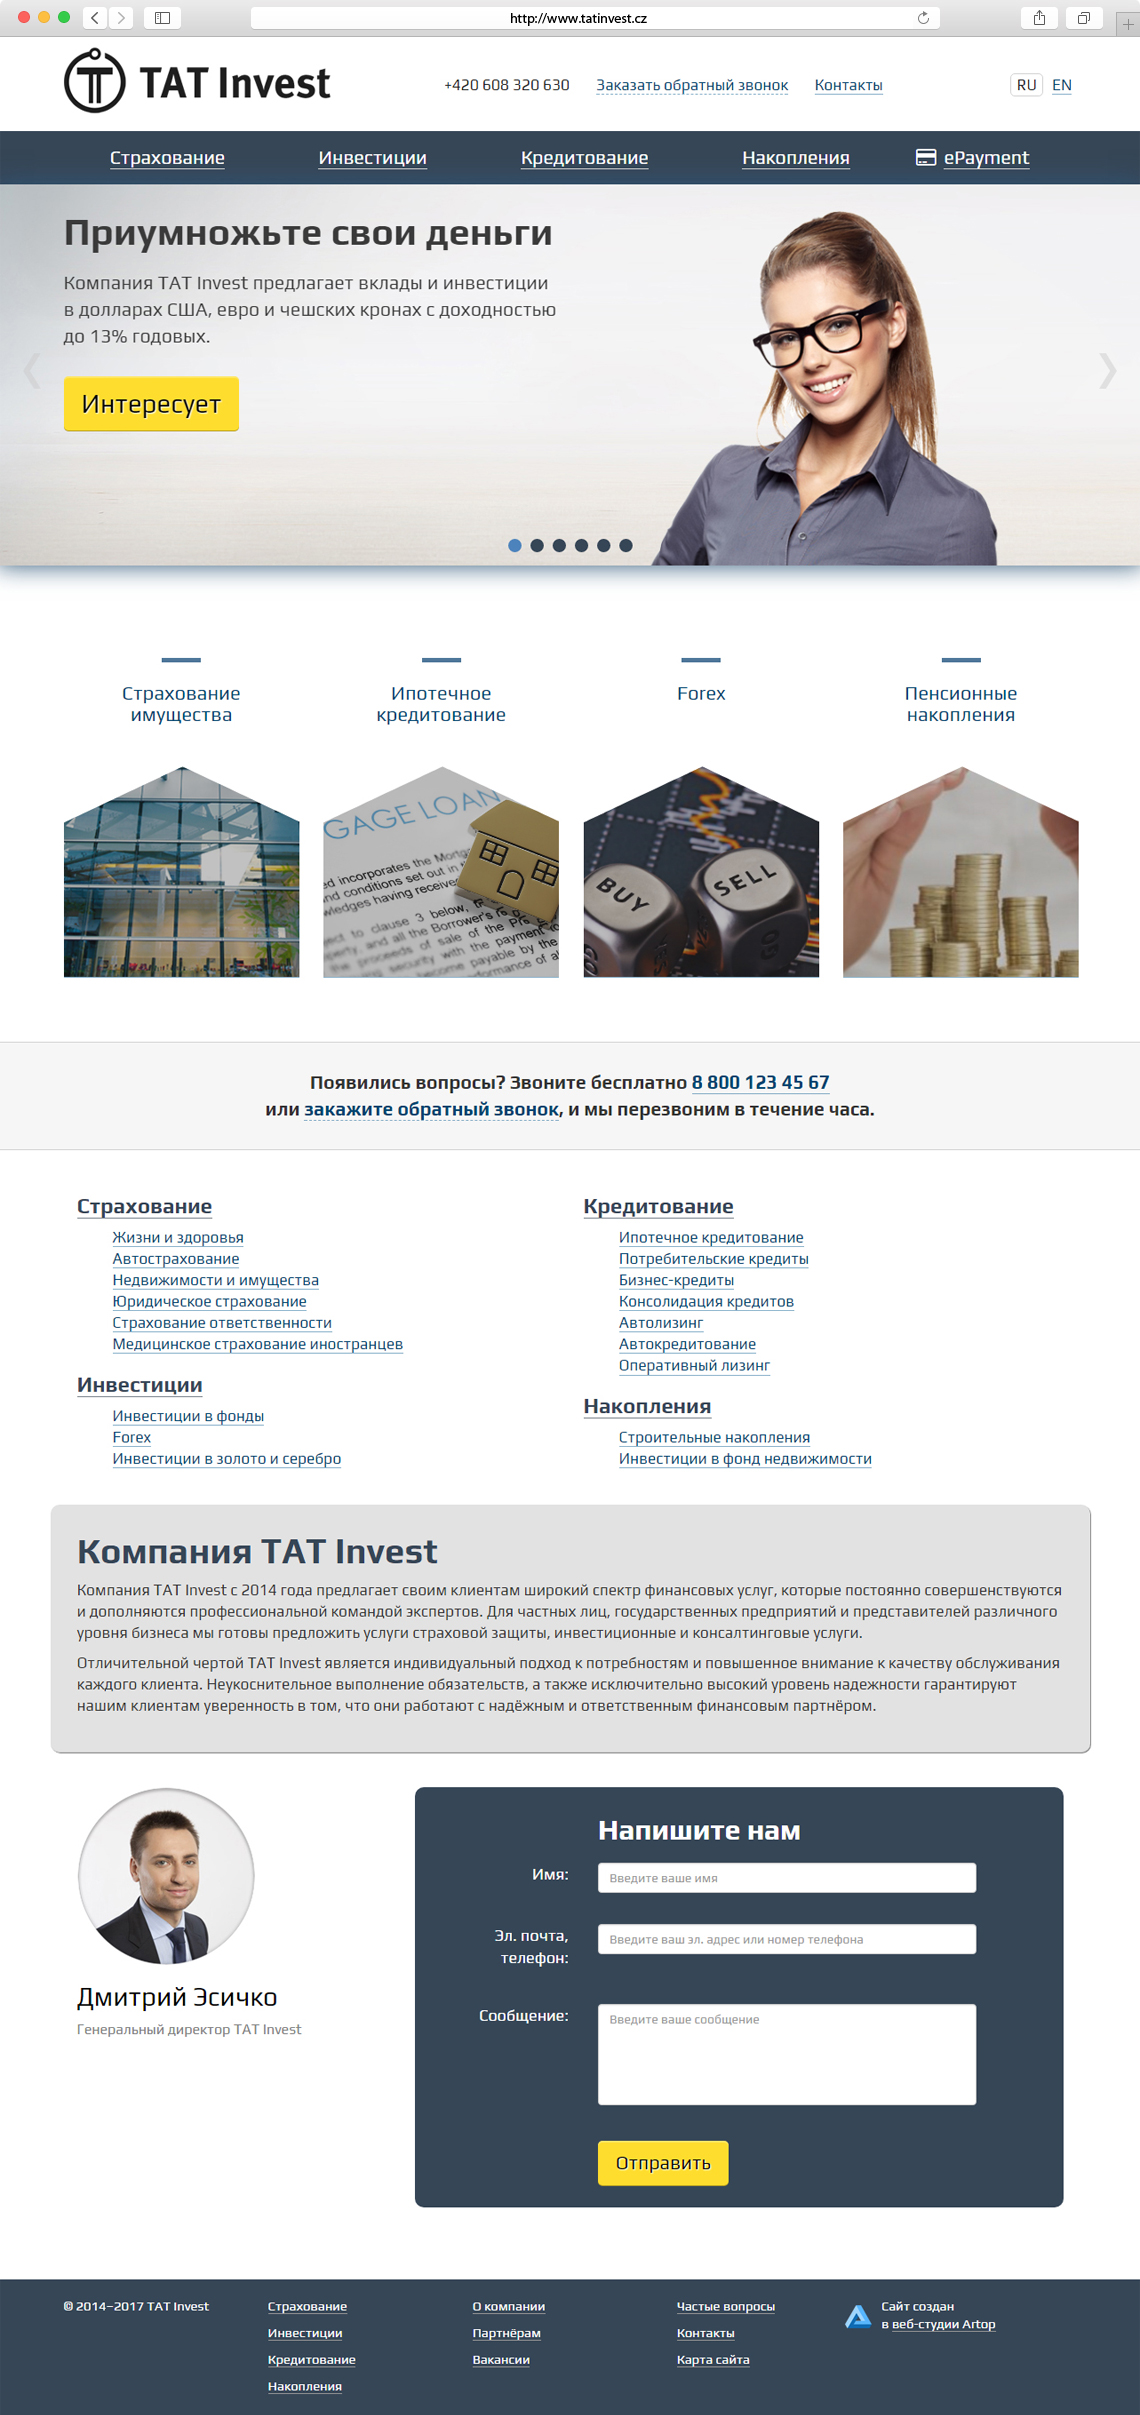 Homepage www.tatinvest.cz